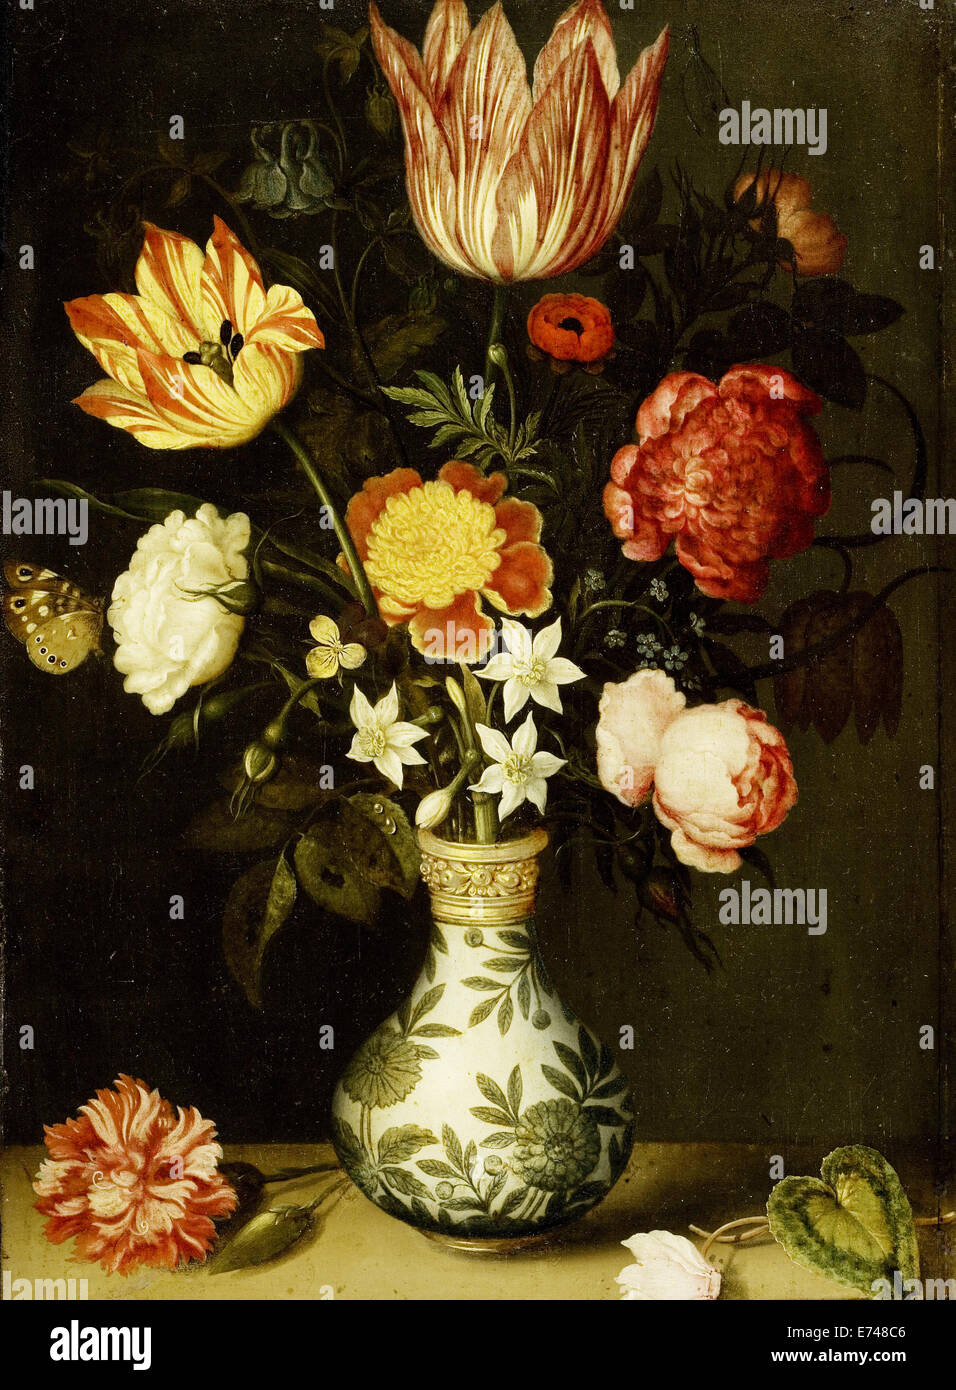 Stillleben mit Blumen in einer Vase von Wan-Li - von Ambrosius Bosschaert, 1619 Stockfoto